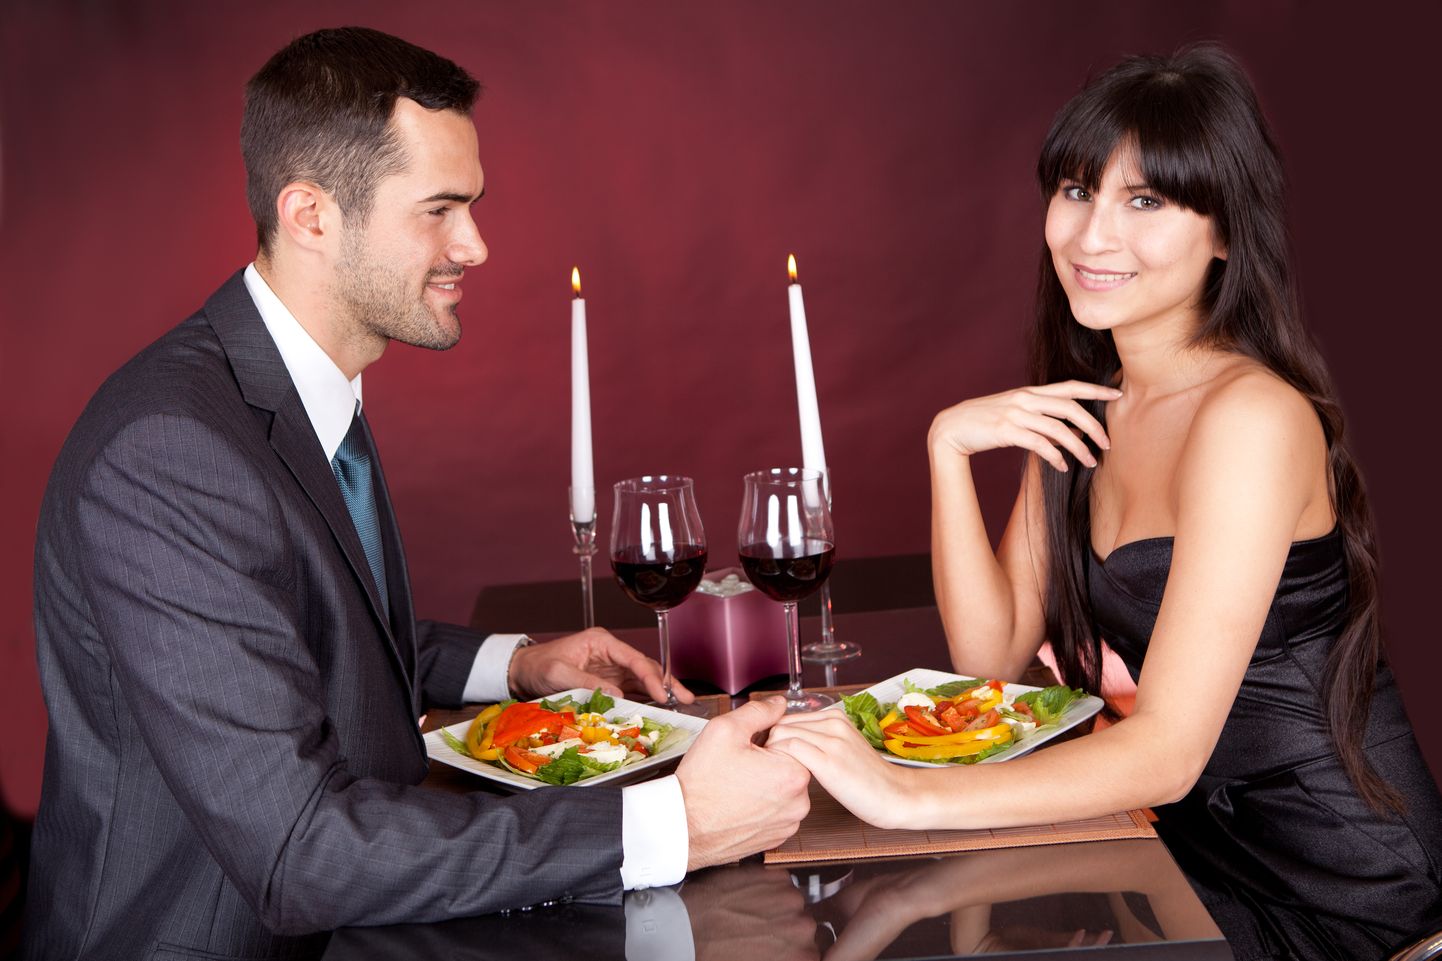 Пара за романтичным ужином. Фото иллюстративное.